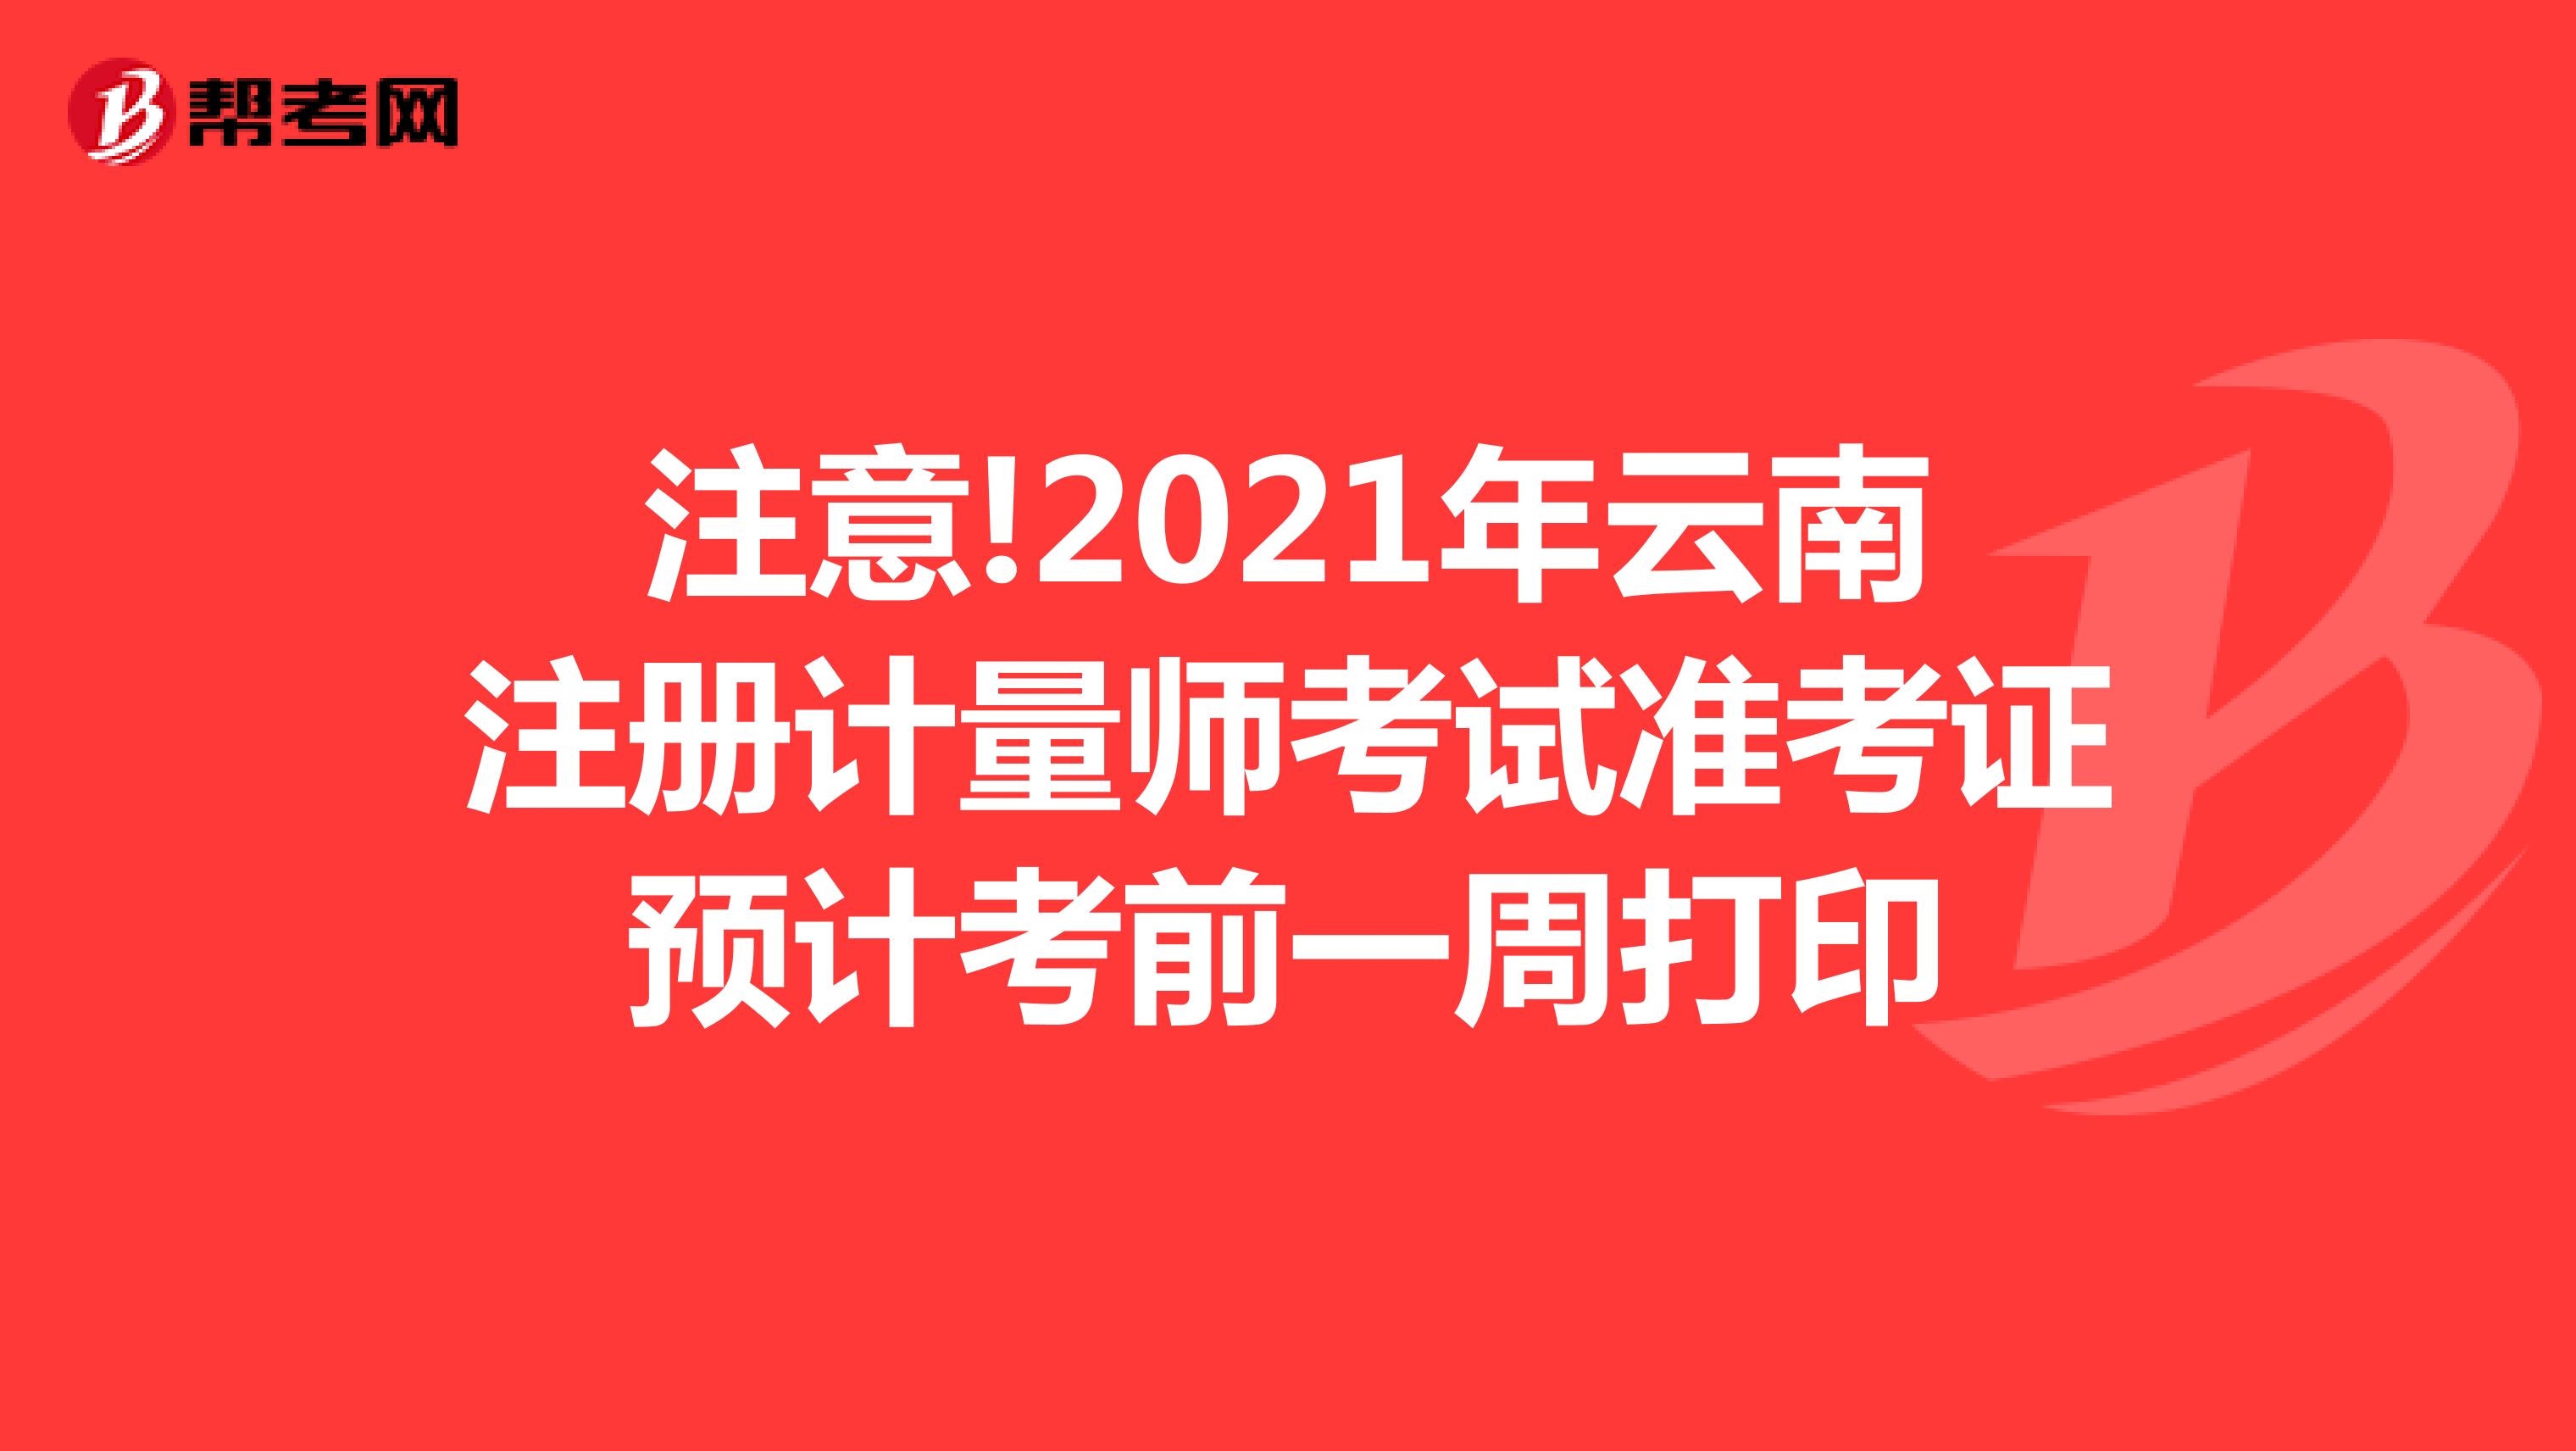 注意!2021年云南注册计量师考试准考证预计考前一周打印